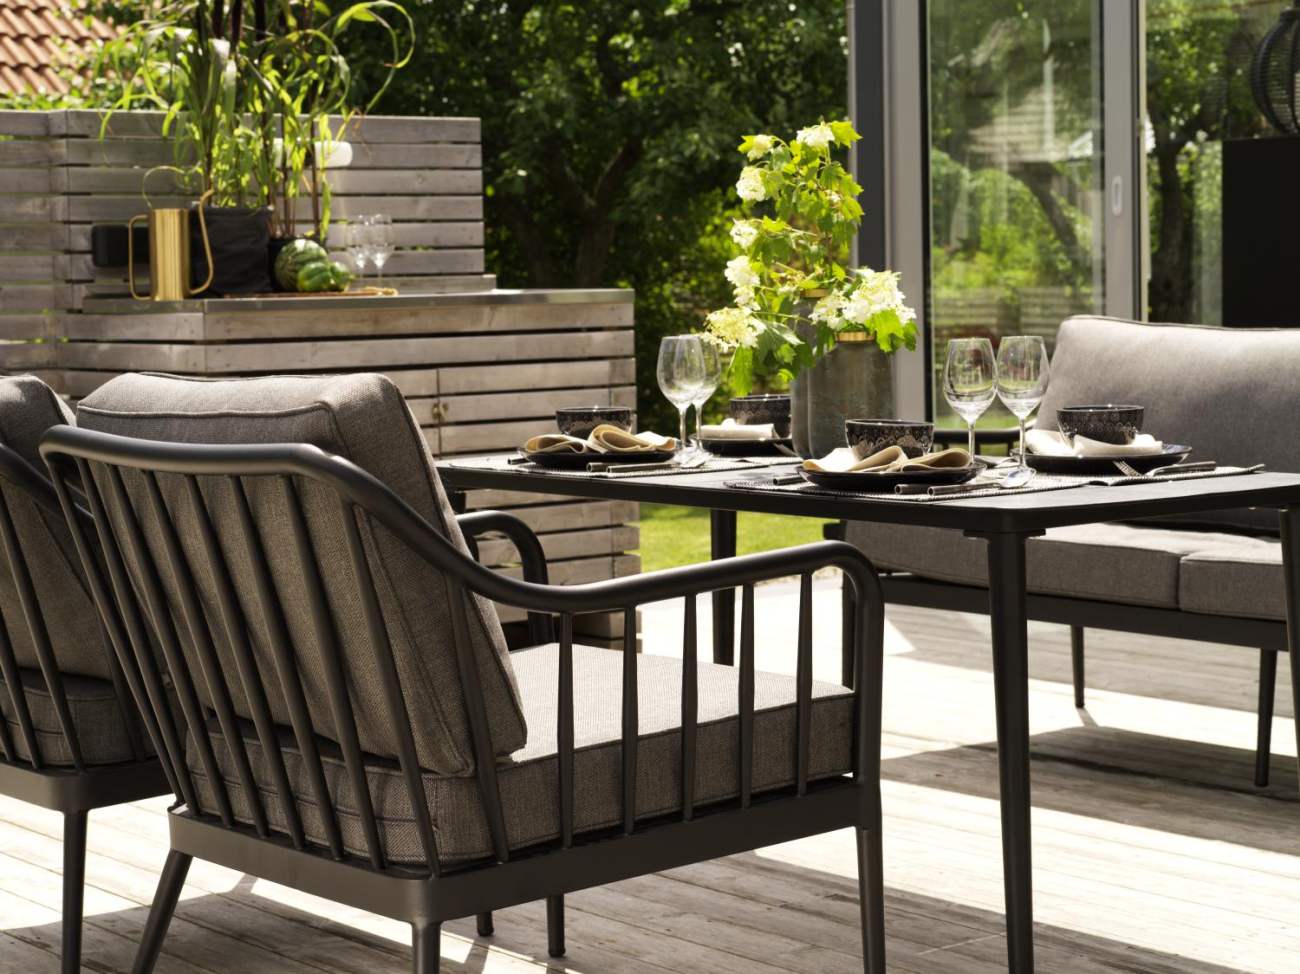 Der Gartensessel Coleville überzeugt mit seinem modernen Design. Gefertigt wurde er aus Metall, welches einen schwarzen Farbton besitzt. Das Gestell ist auch aus Metall. Die Sitzhöhe des Sessels beträgt 48 cm.